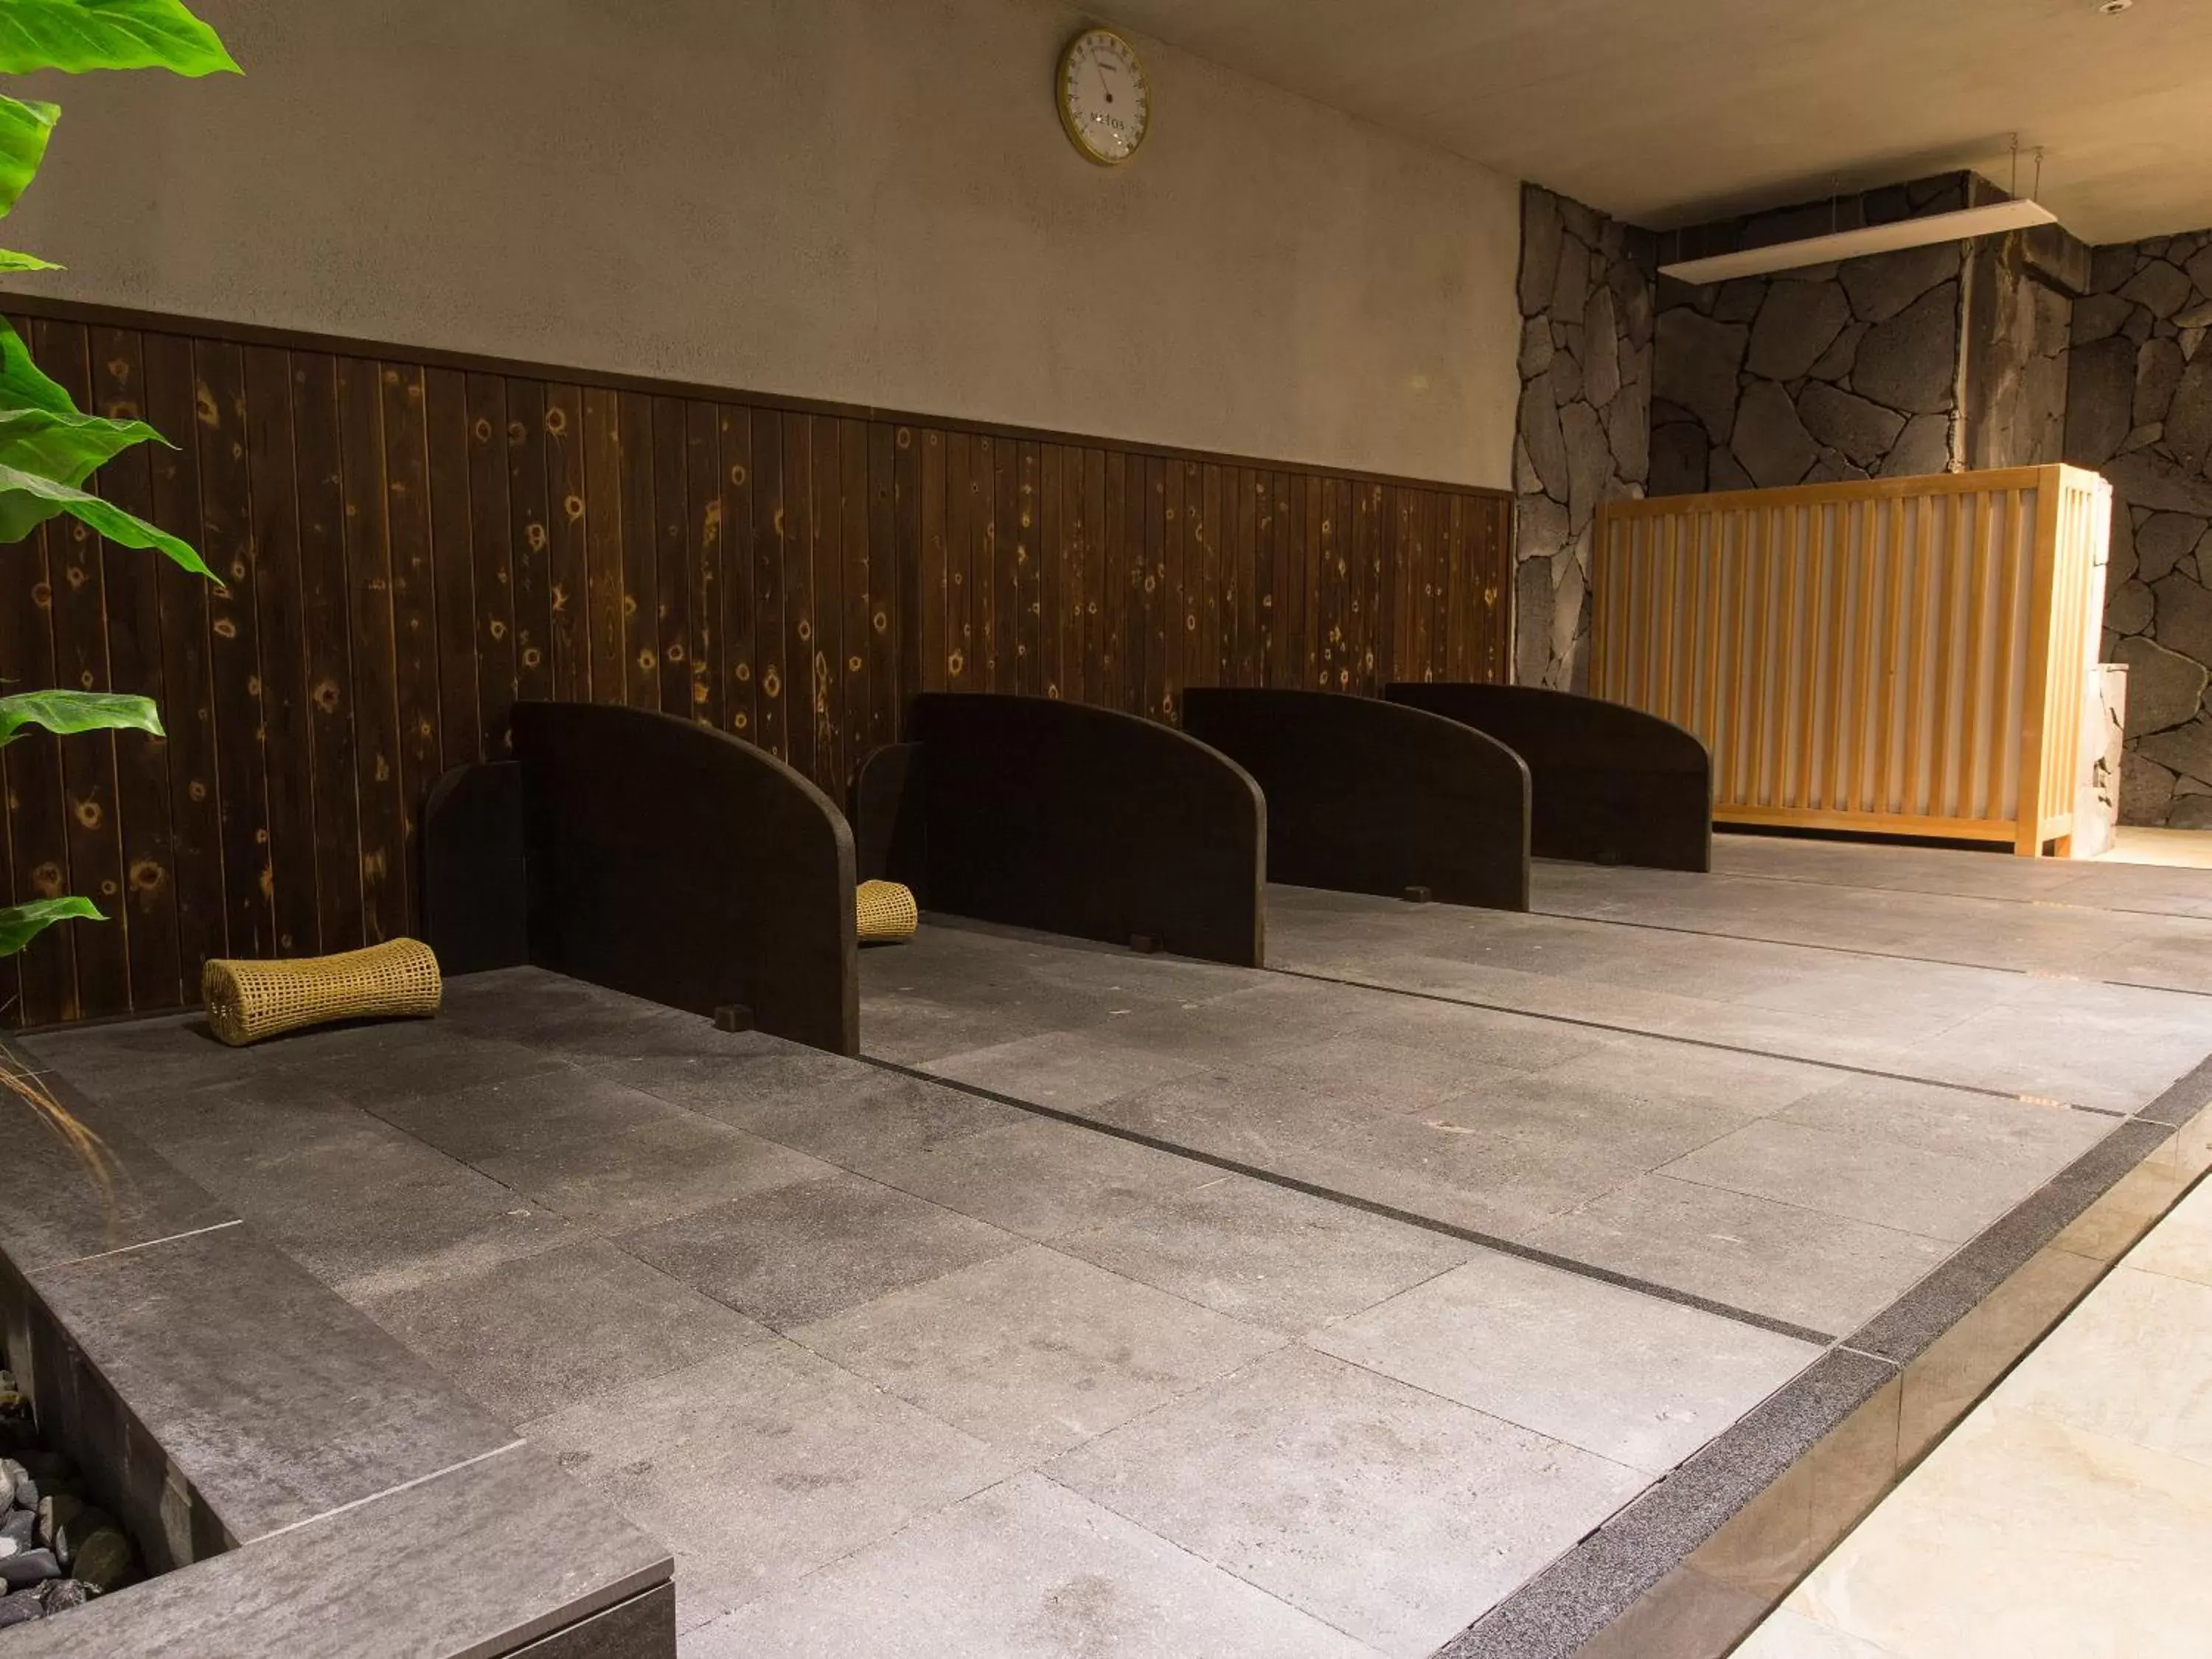 Area and facilities in Himeji Castle Grandvrio Hotel